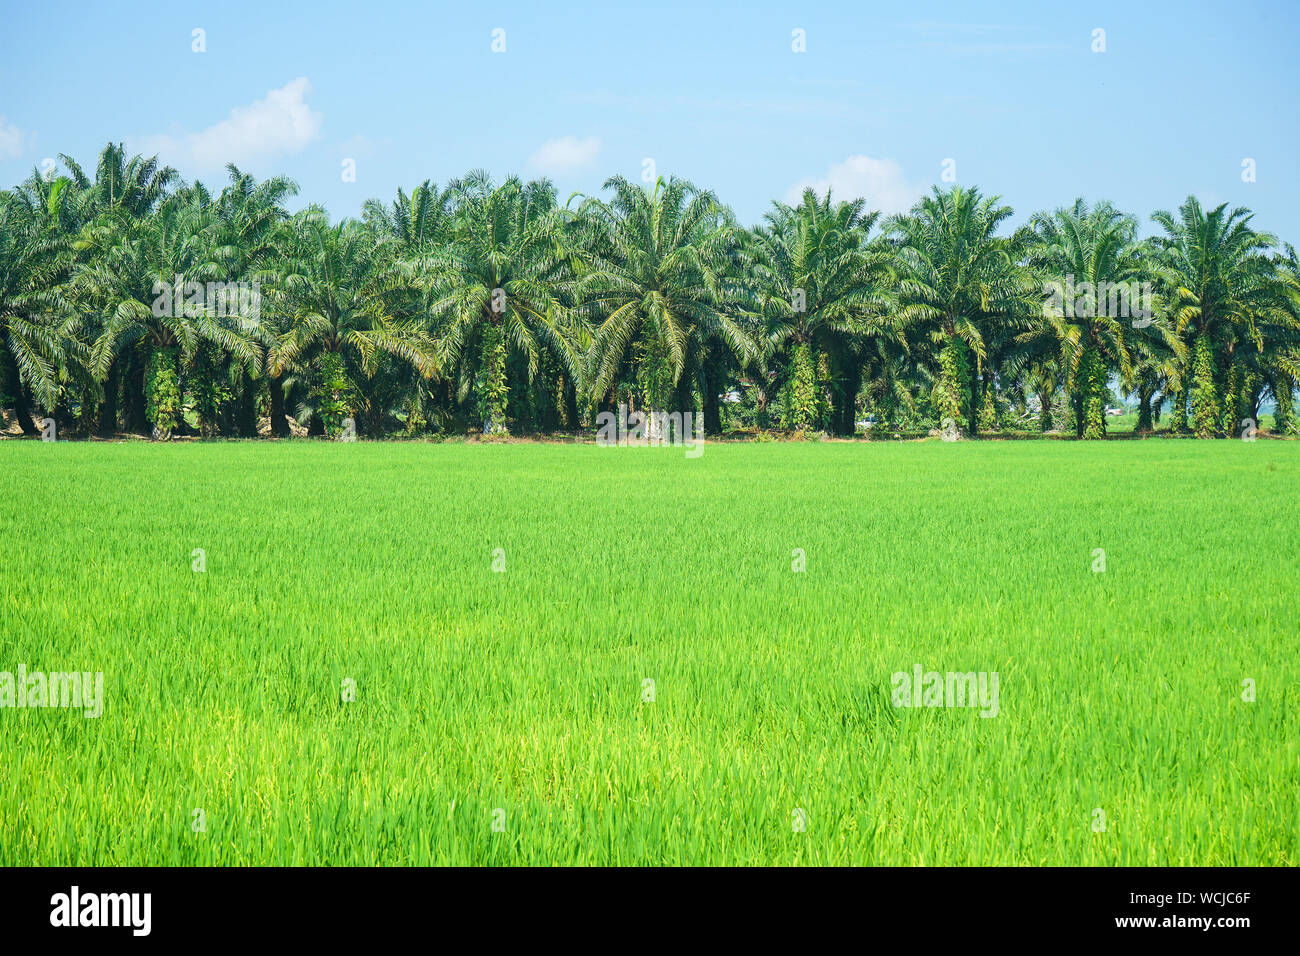 Vista escénica de arrozales y plantaciones de palma de aceite Foto de stock